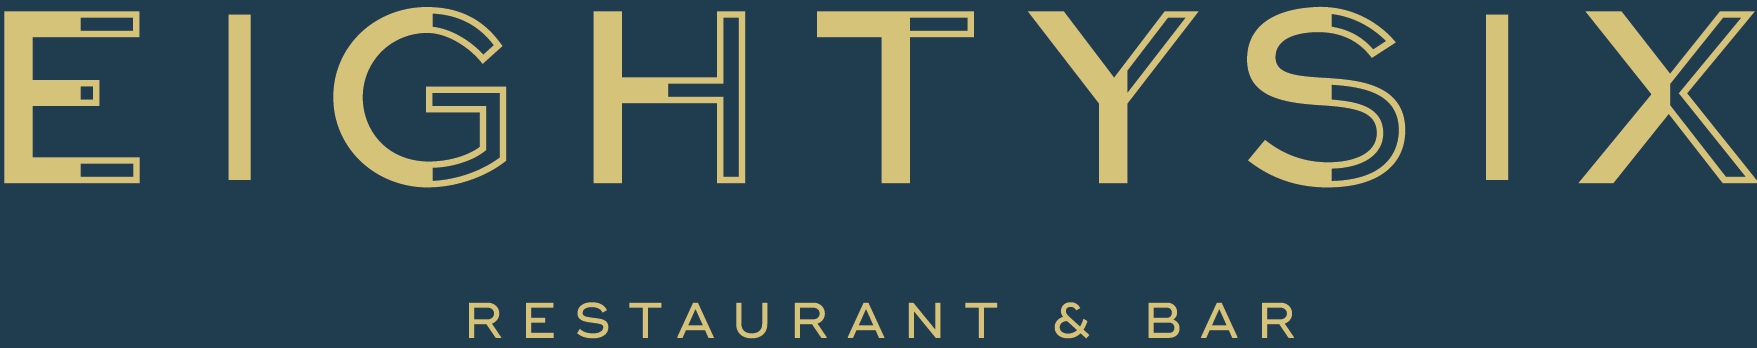 Eighty Six Restaurant & Bar